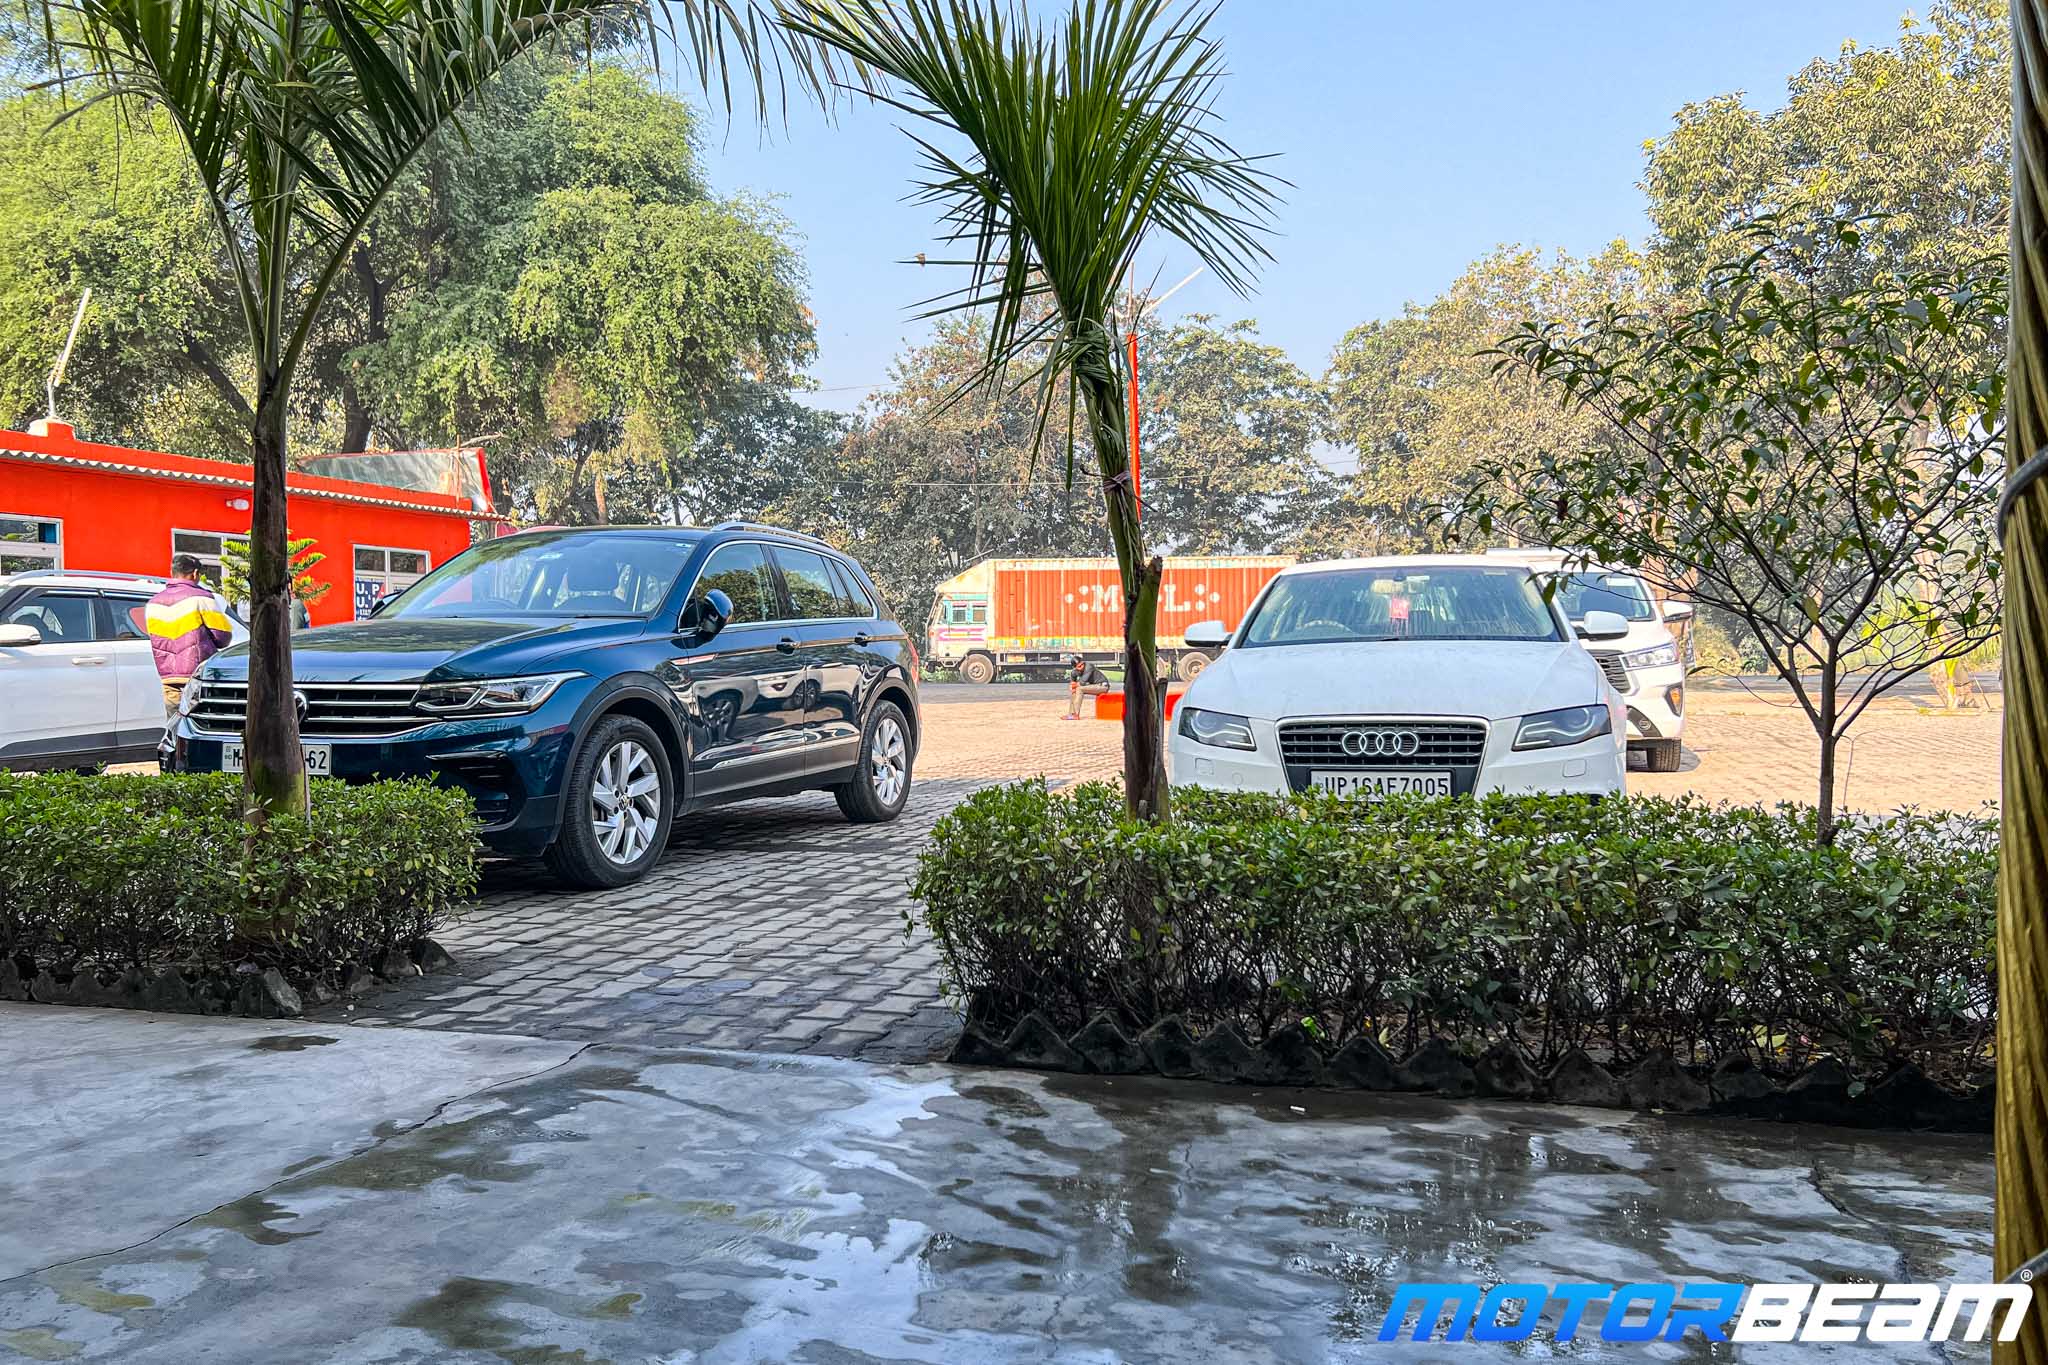 Volkswagen Tiguan - Drive To The Natures Heaven